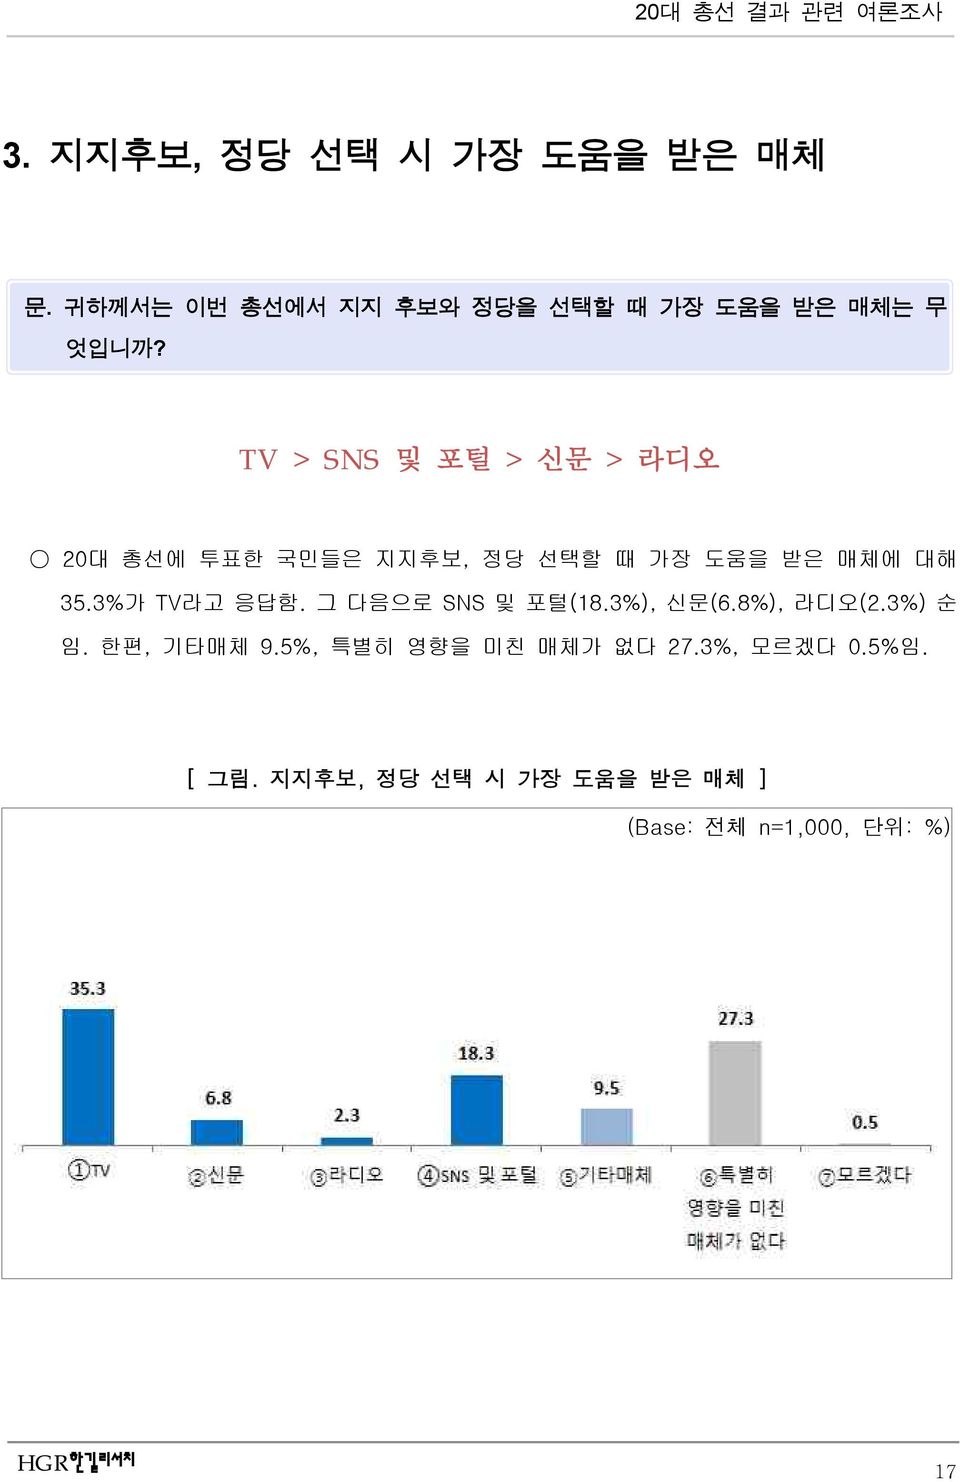 3%가 TV라고 응답함. 그 다음으로 SNS 및 포털(18.3%), 신문(6.8%), 라디오(2.3%) 순 임. 한편, 기타매체 9.